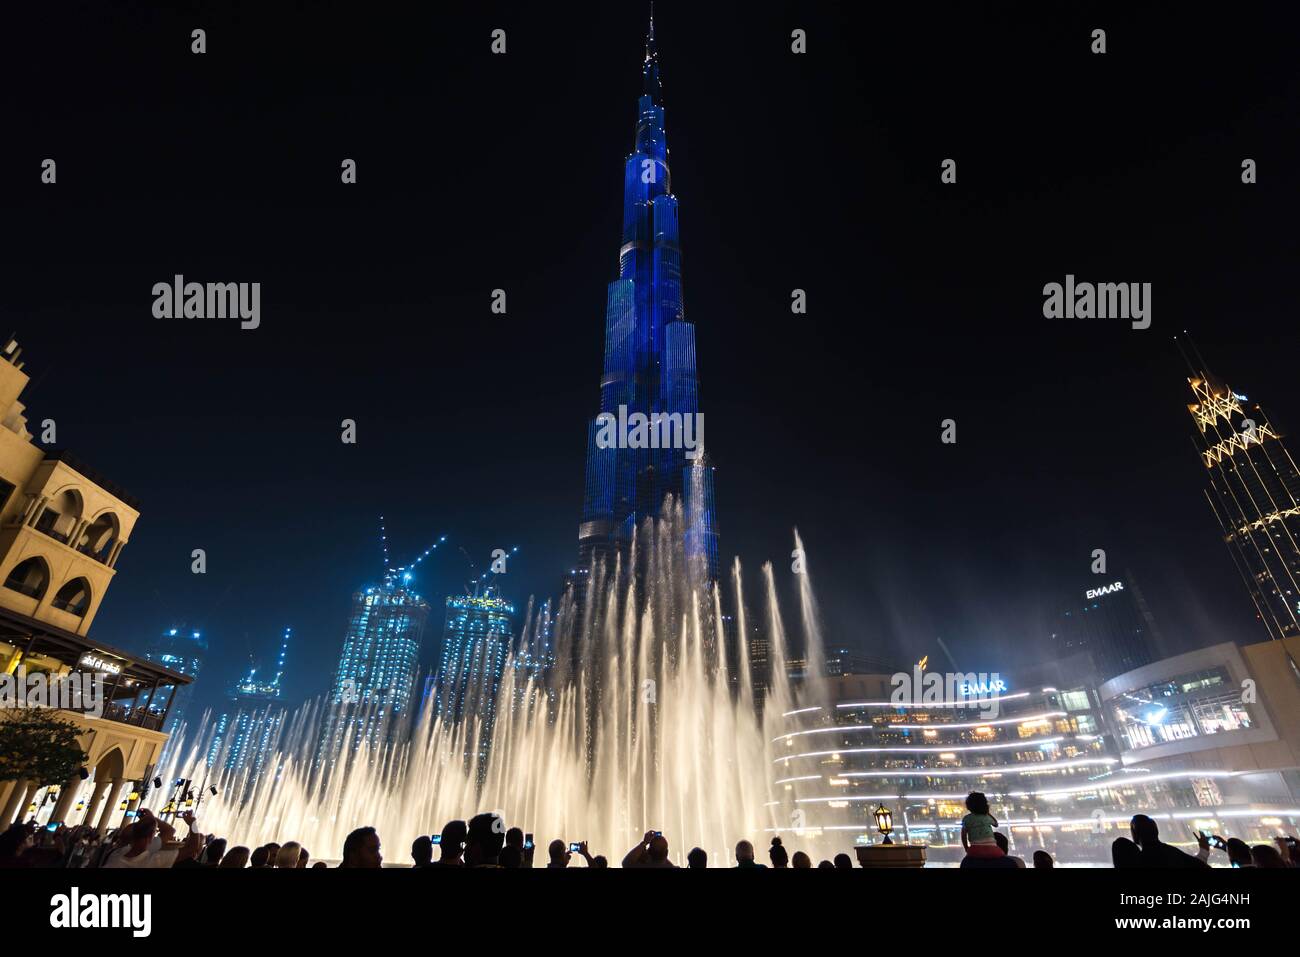 Dubaï, Emirats Arabes Unis : Amazing light et fontaines montrer sur le Burj Khalifa, l'immeuble le plus haut gratte-ciel du monde, illuminée par nuit Banque D'Images